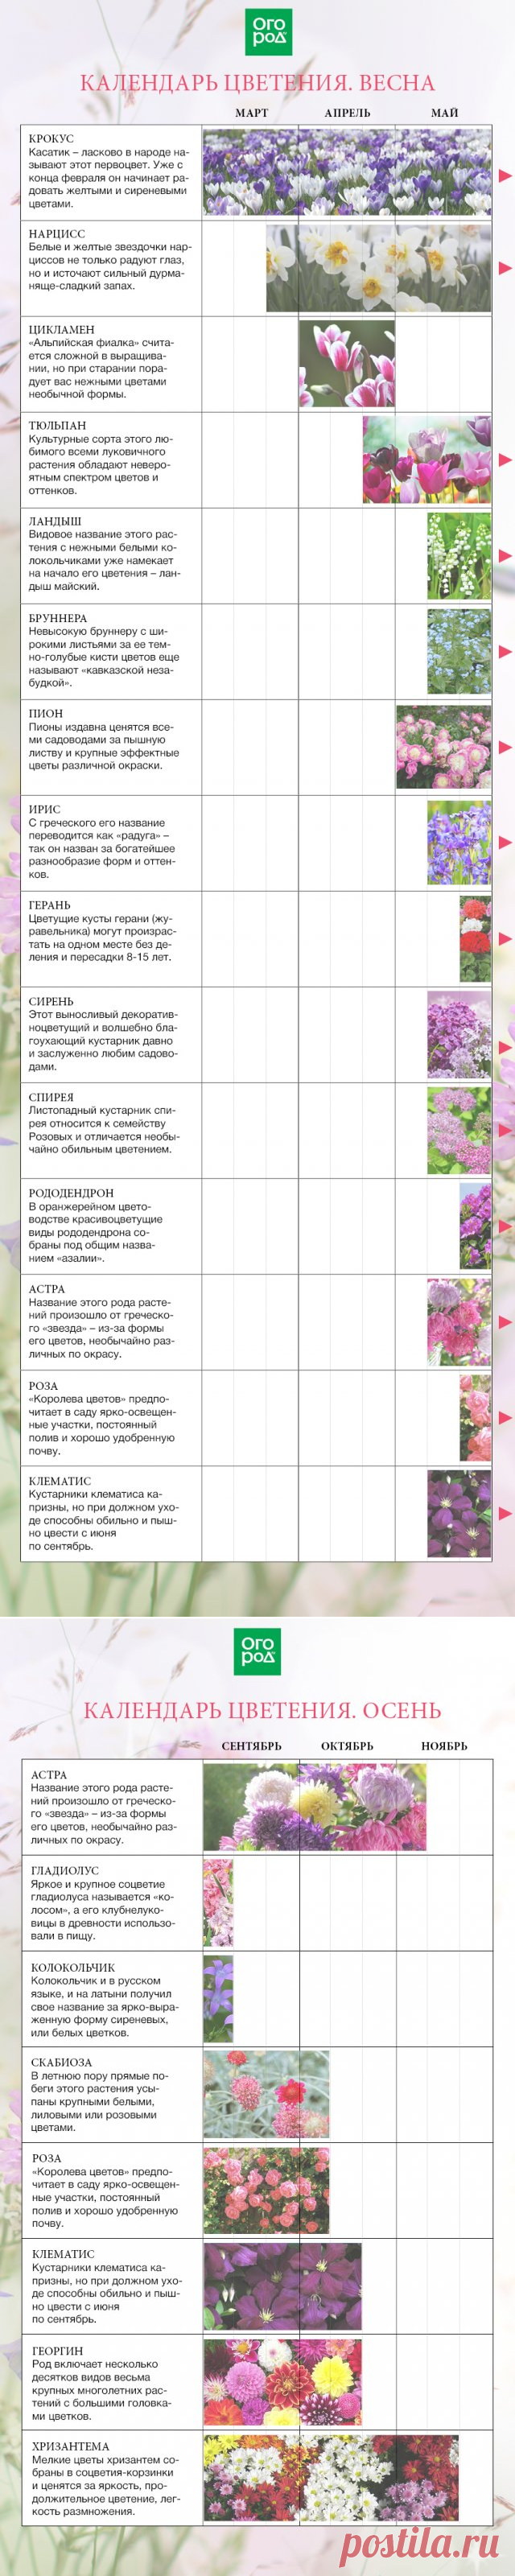 Календарь цветения многолетников по месяцам с весны до осени | Календарь работ (Огород.ru)